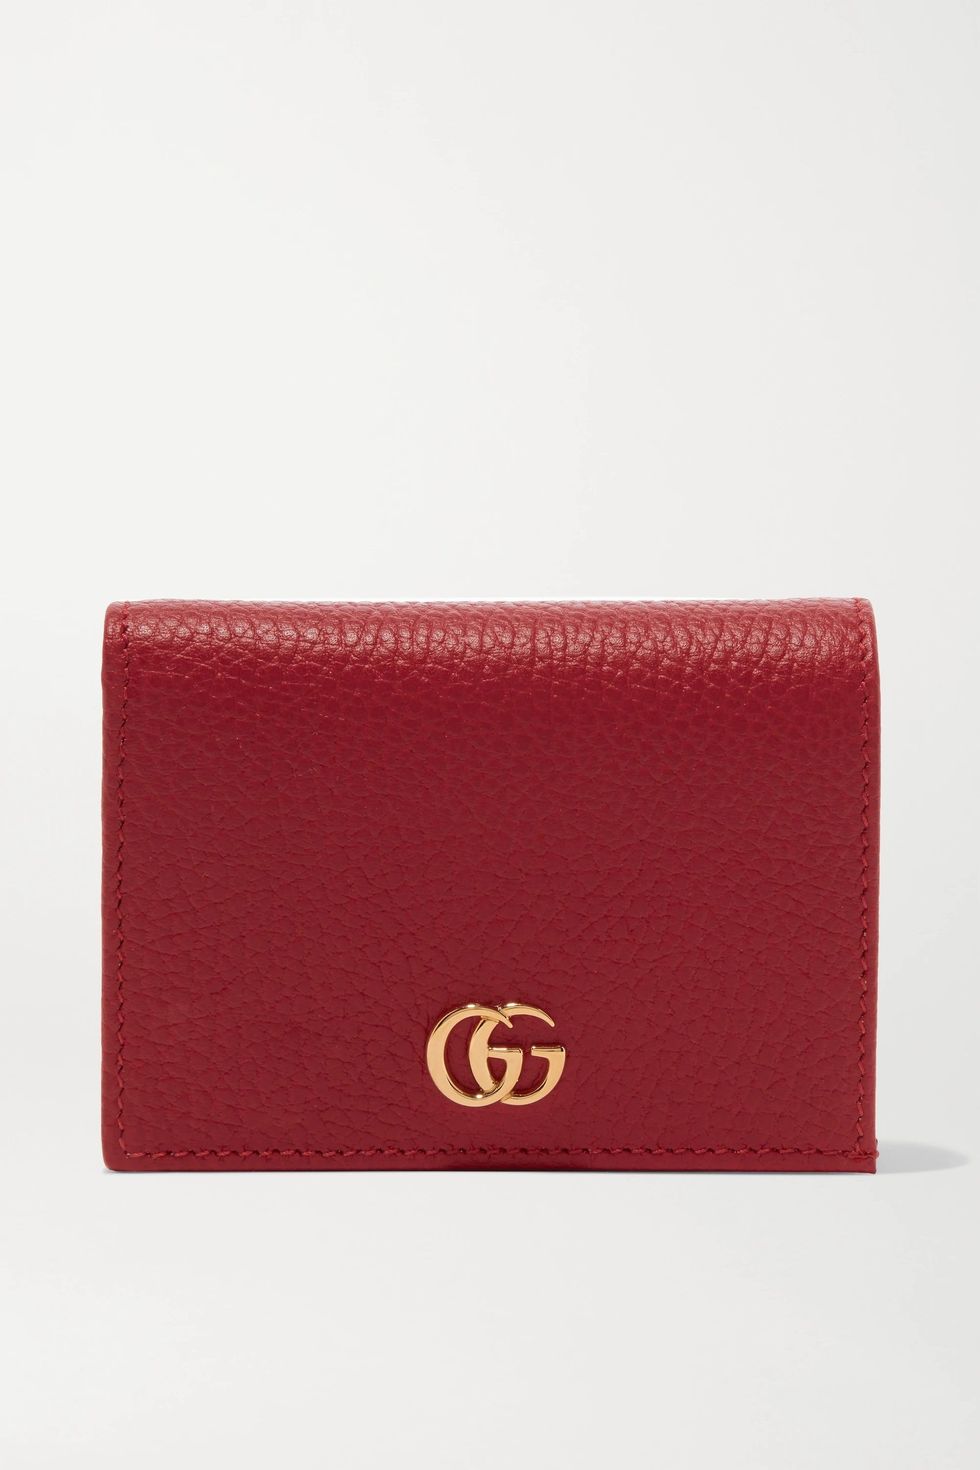 紅色皮夾推薦：Gucci Marmont Petite雙折短夾